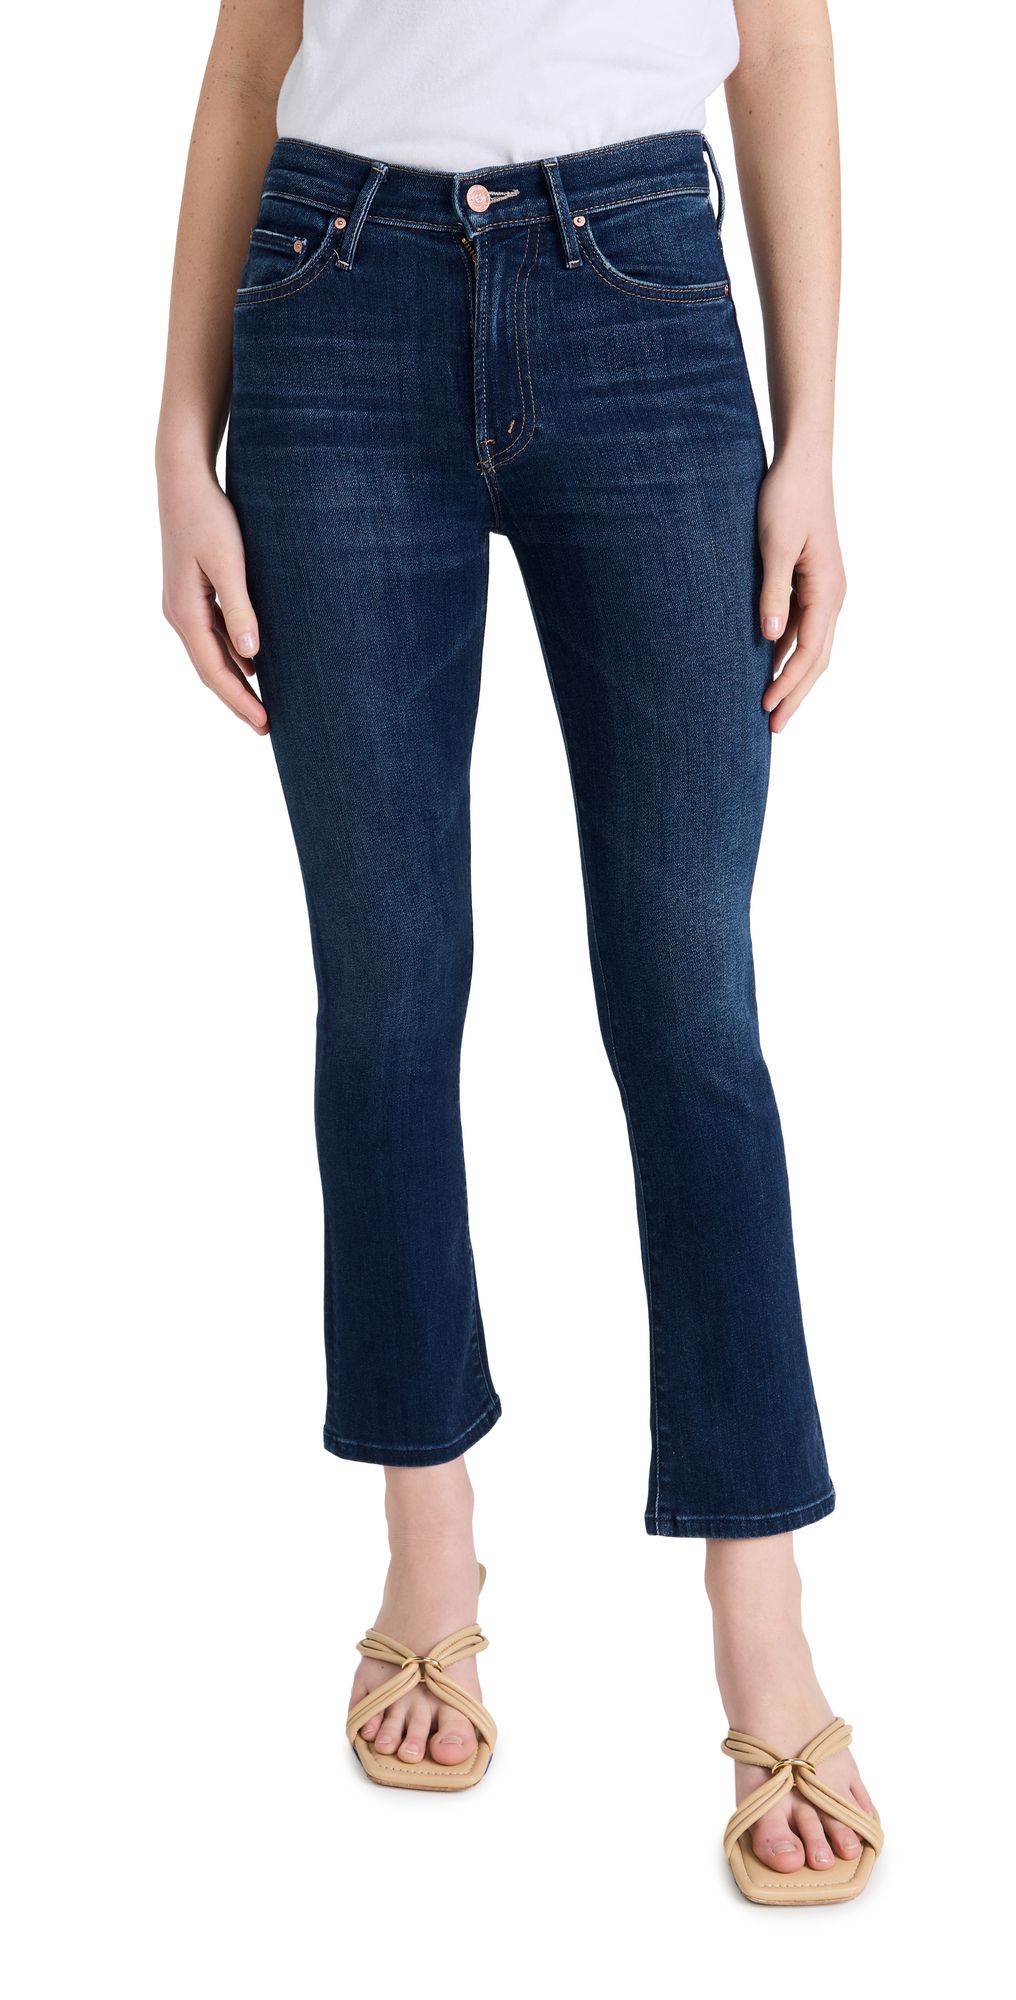 MOTHER Insider Ankle Jeans | Shopbop